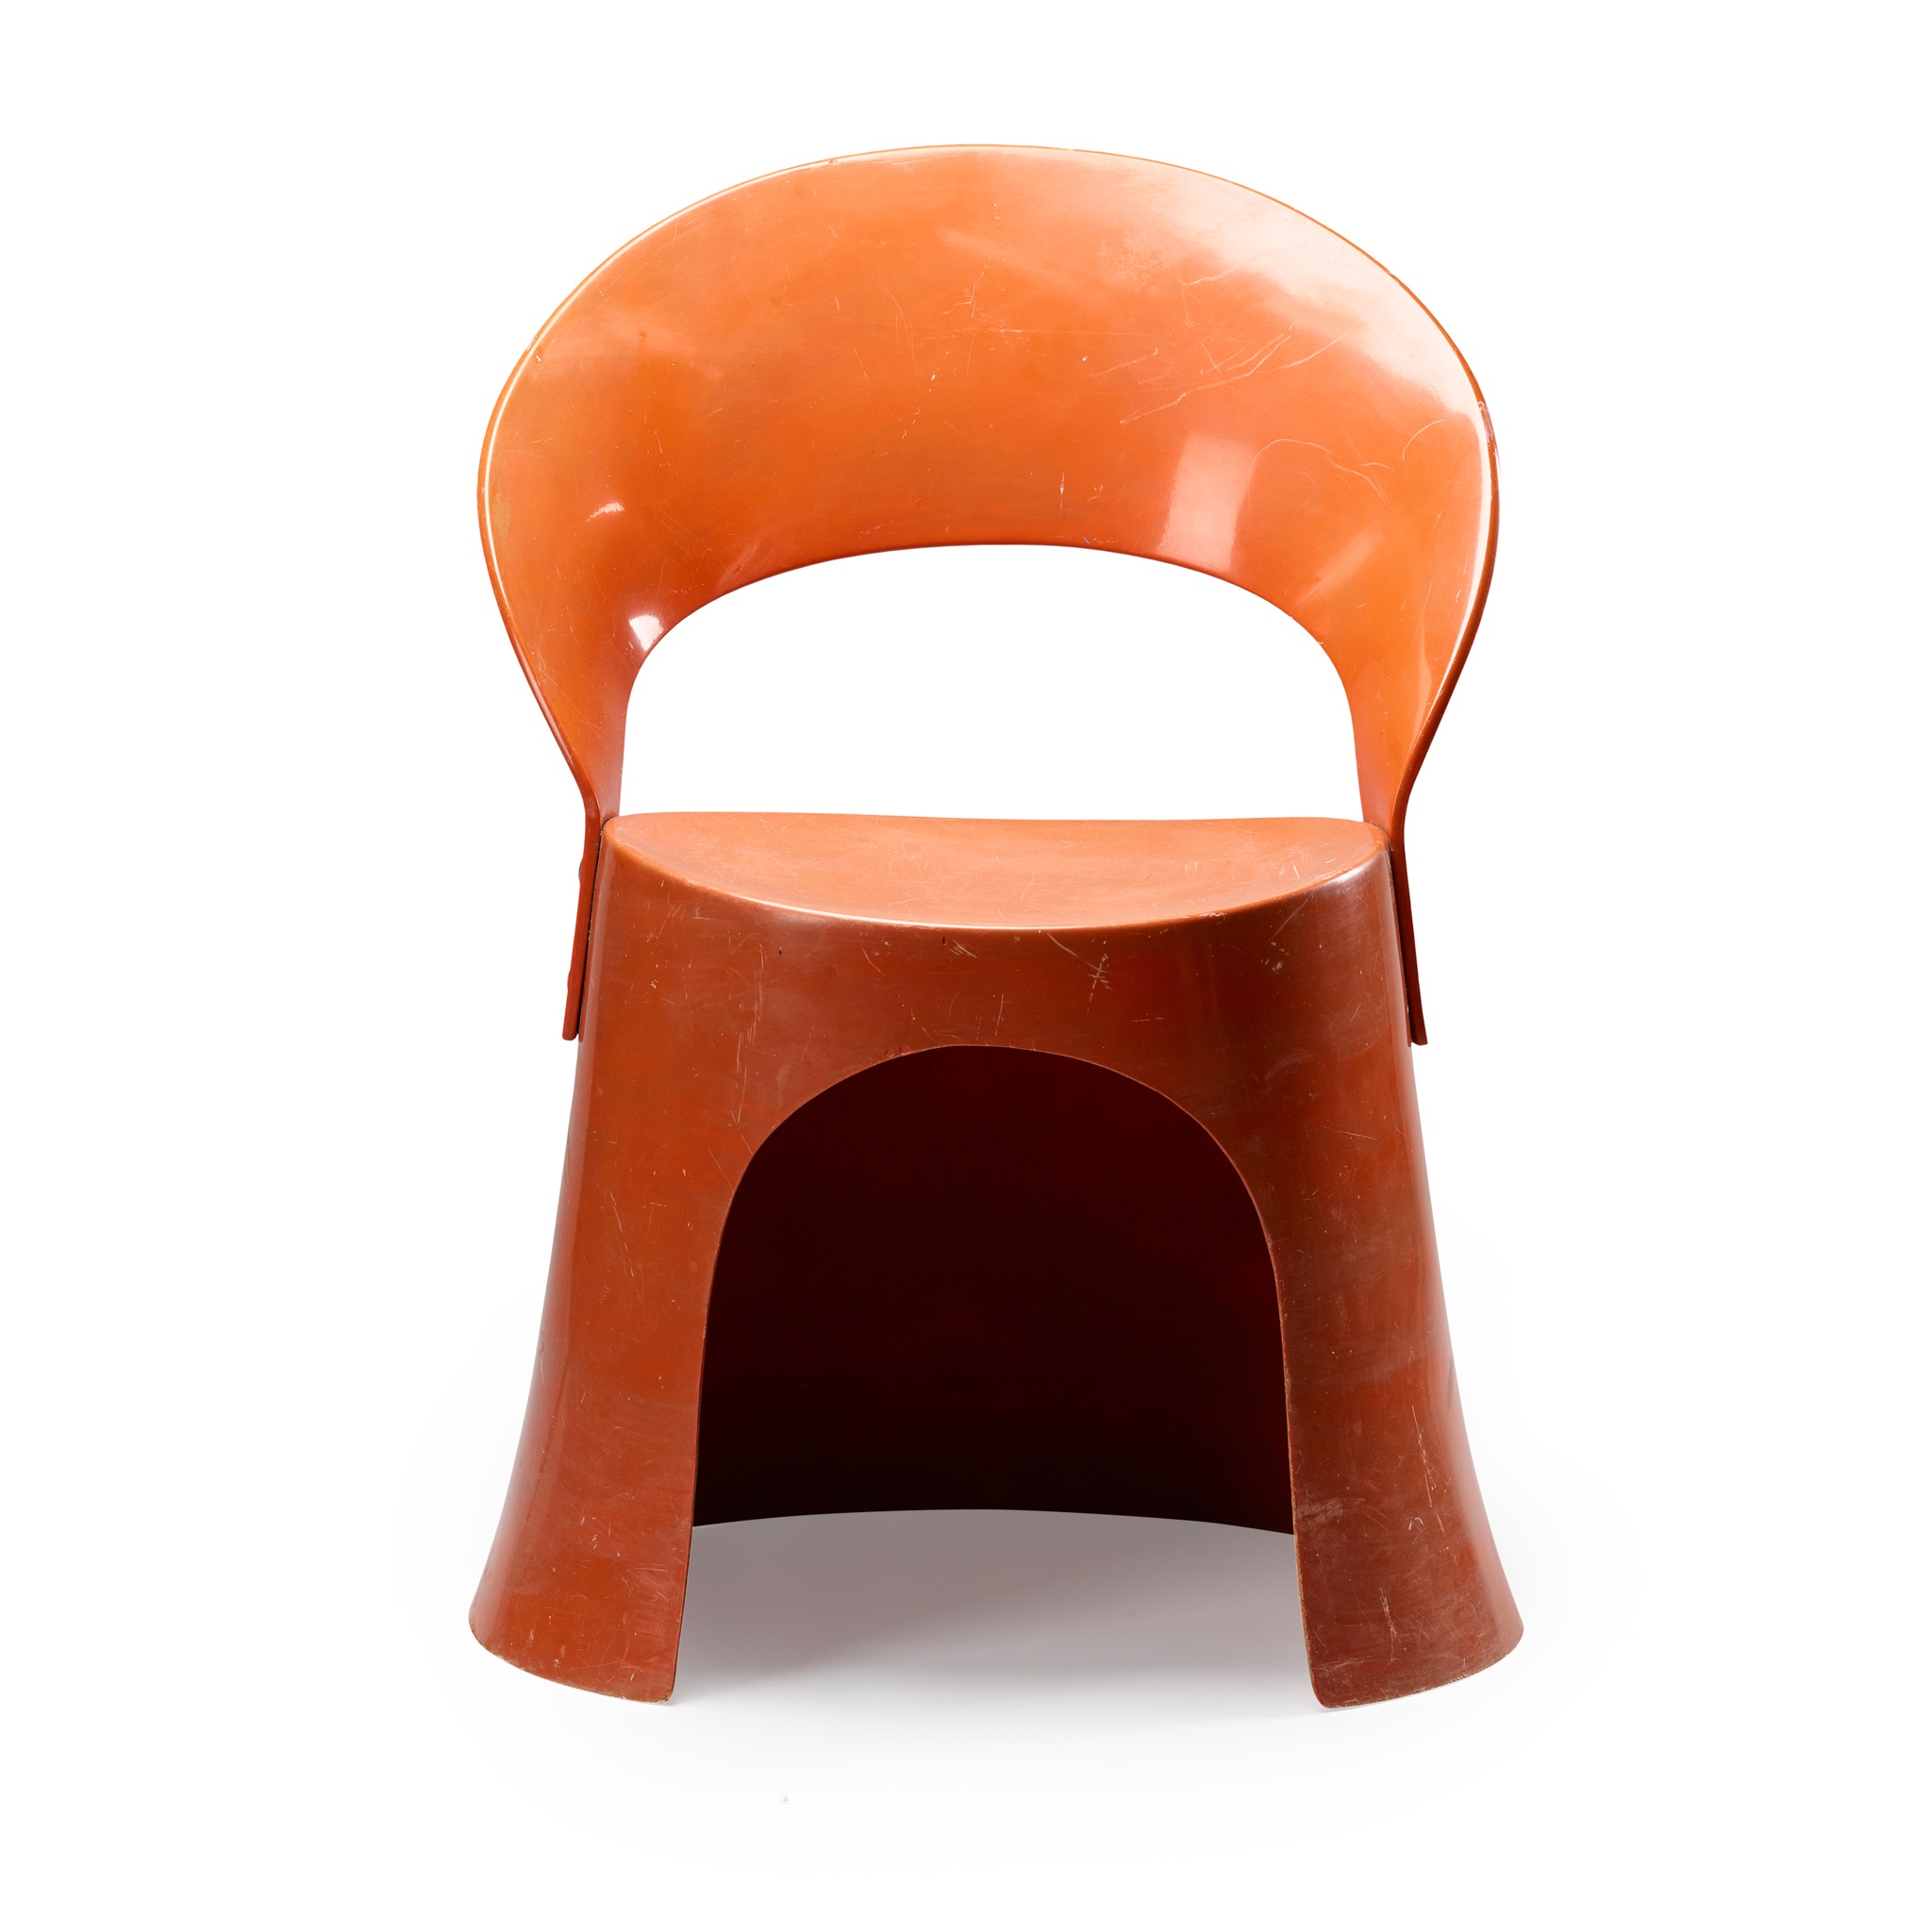 Nanna Ditzel (Danish 1923-2005) for Oddense Maskinsnedkeri Chair, designed 1969 - Image 2 of 2